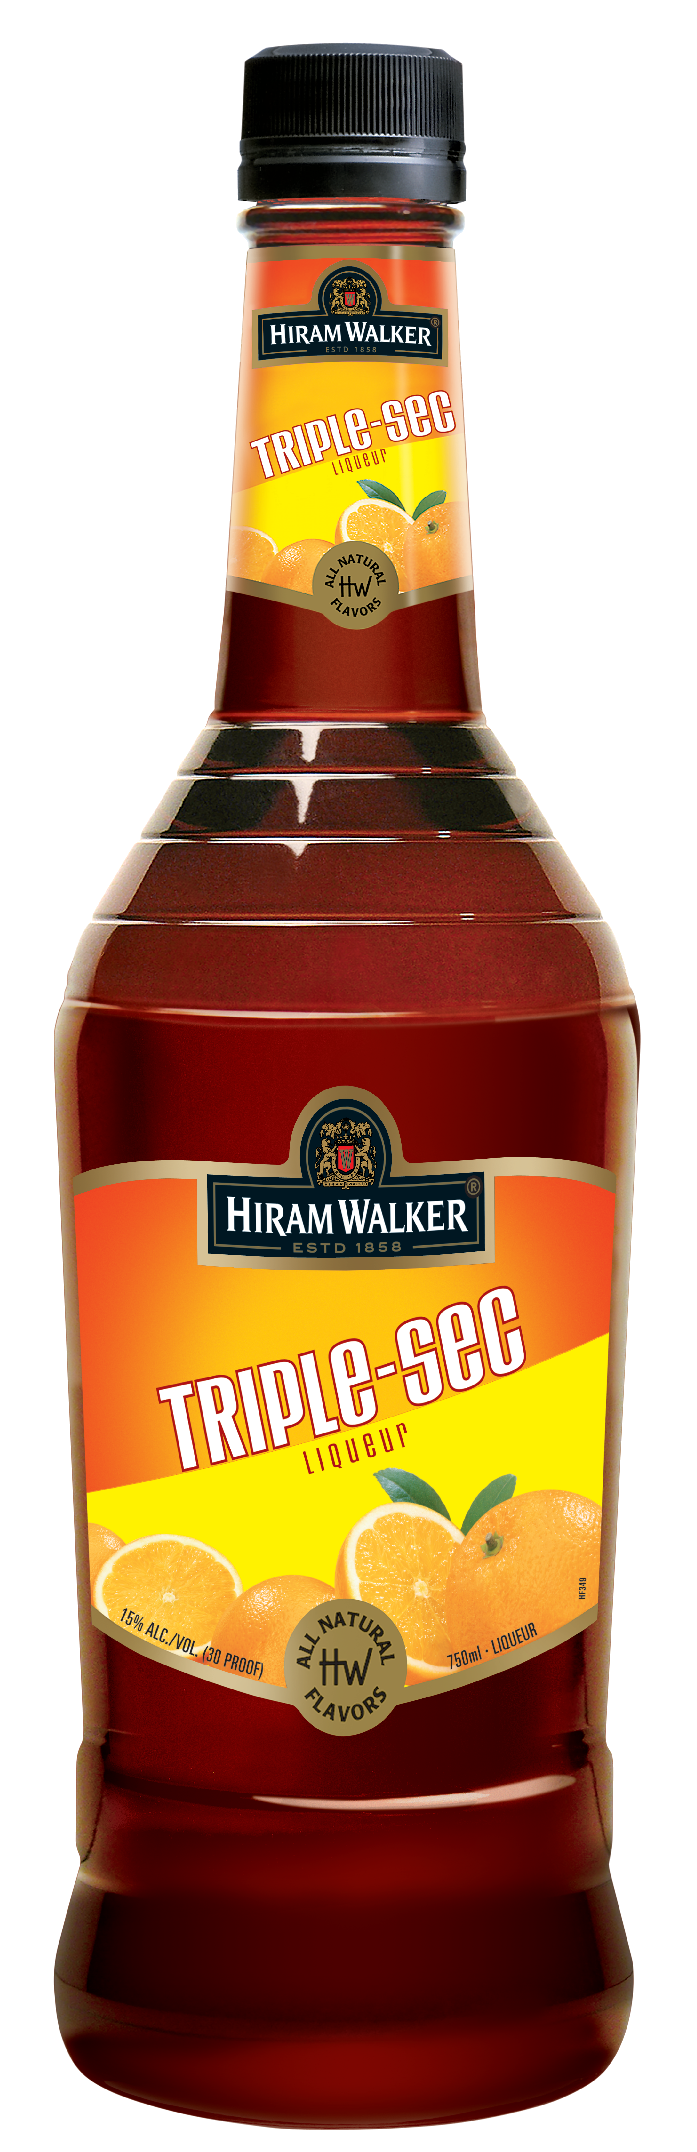 https://www.bottlebuys.com/images/sites/bottlebuys/labels/hiram-walker-triple-sec-lit_1.jpg